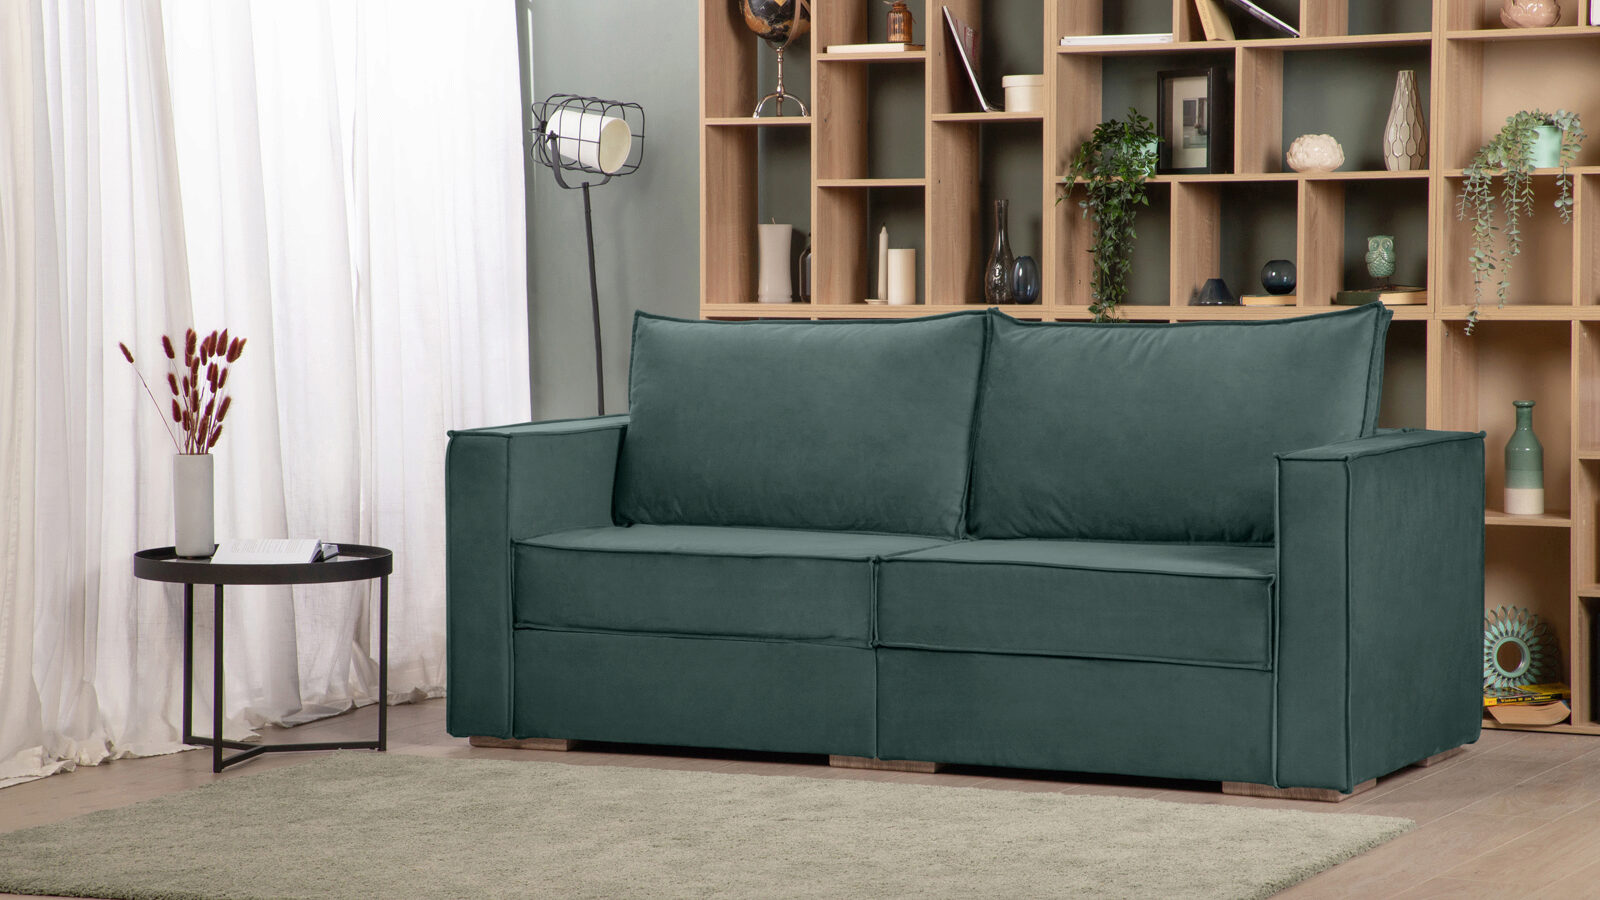 Модульный диван Hero 2-секционный с подлокотниками угловой секционный диван шезлонги крышки для гостиной эластичный диван кресло скользящий чехол набор стрейч l форма нужно купить 2шт